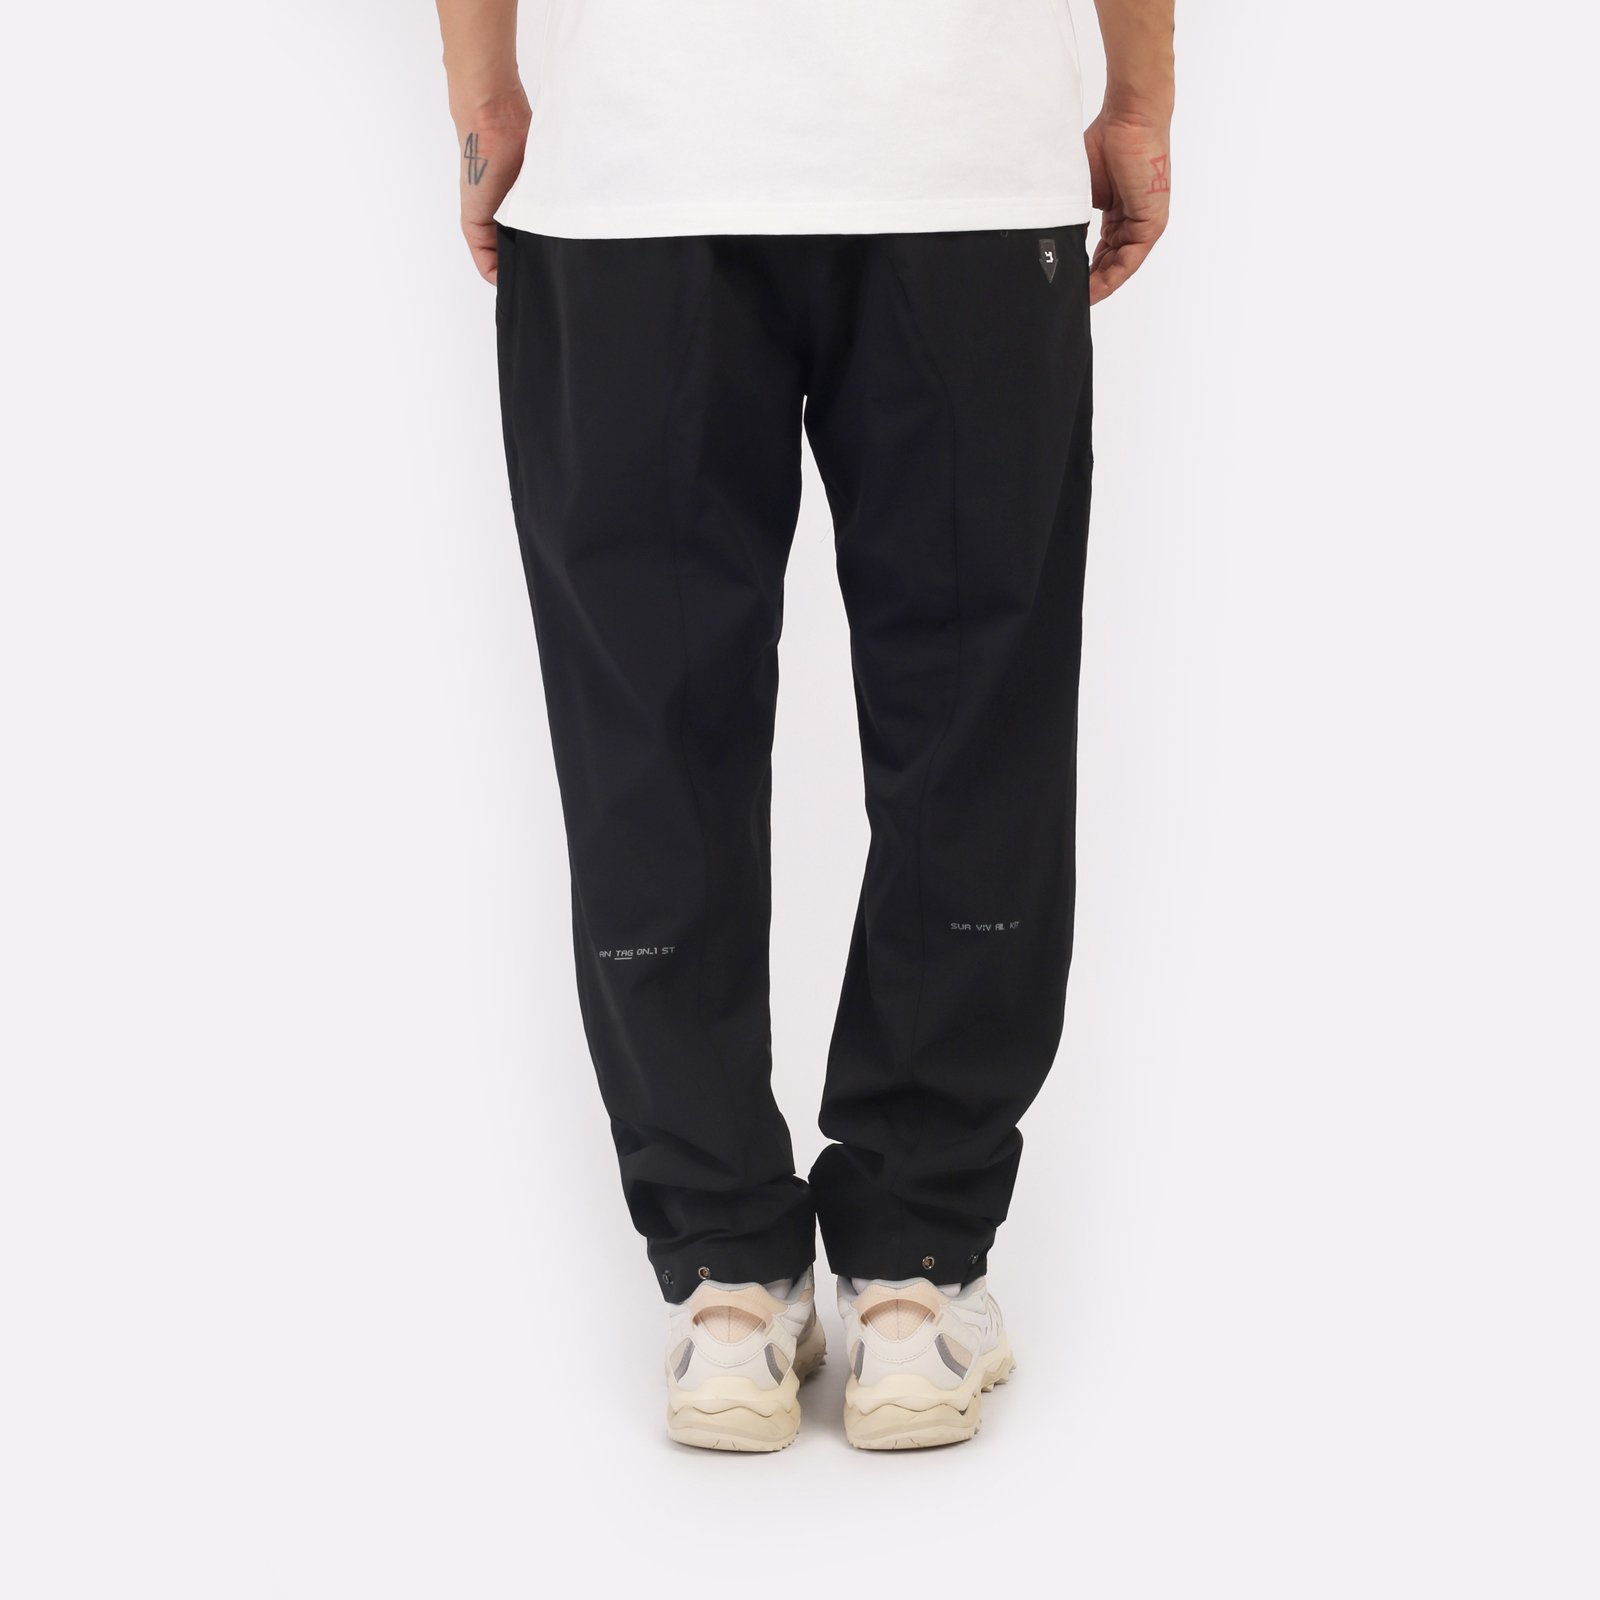 мужские черные брюки KRAKATAU Rm180-1 Rm180-1-чёрный - цена, описание, фото 2